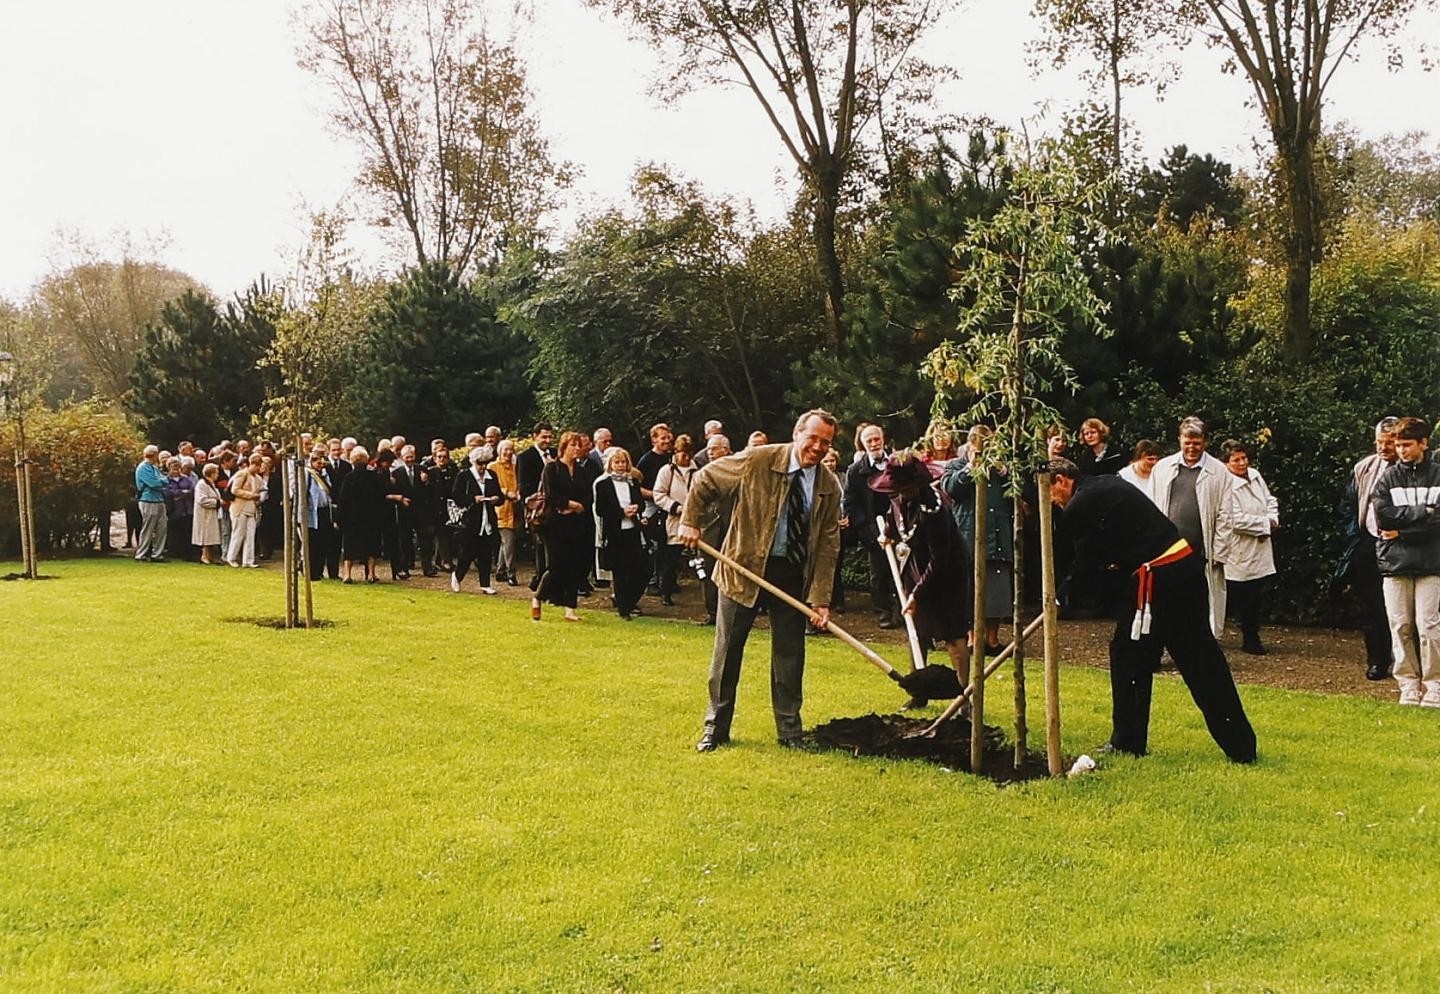 Pflanzung eines Baumes durch Oberbürgermeister Offele und Bürgermeister Landuyt